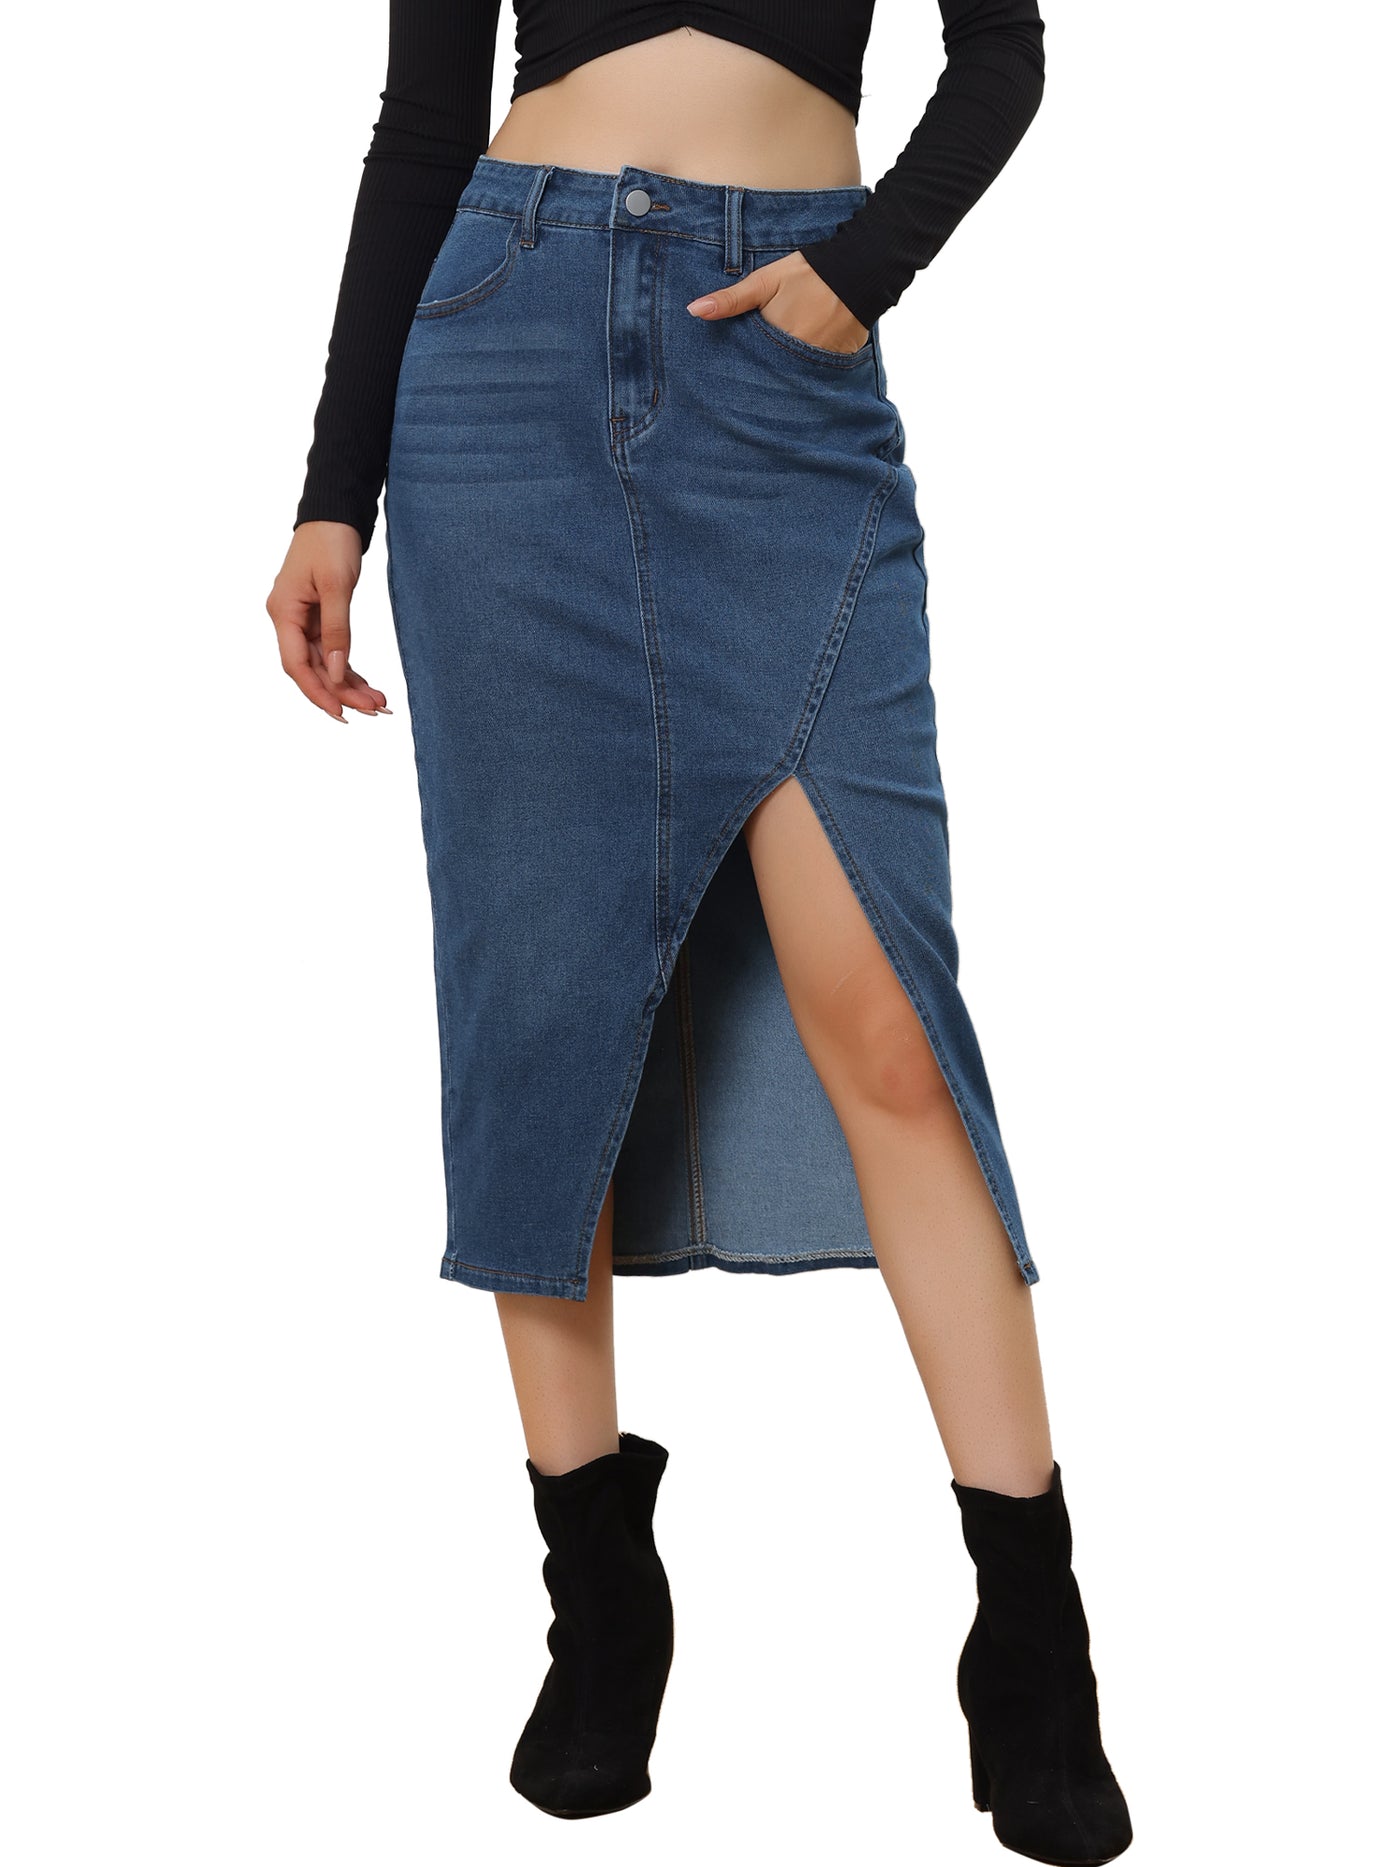 Allegra K Women's Denim Skirt Casual High Waisted Front Slit Knee Length Jean Skirts